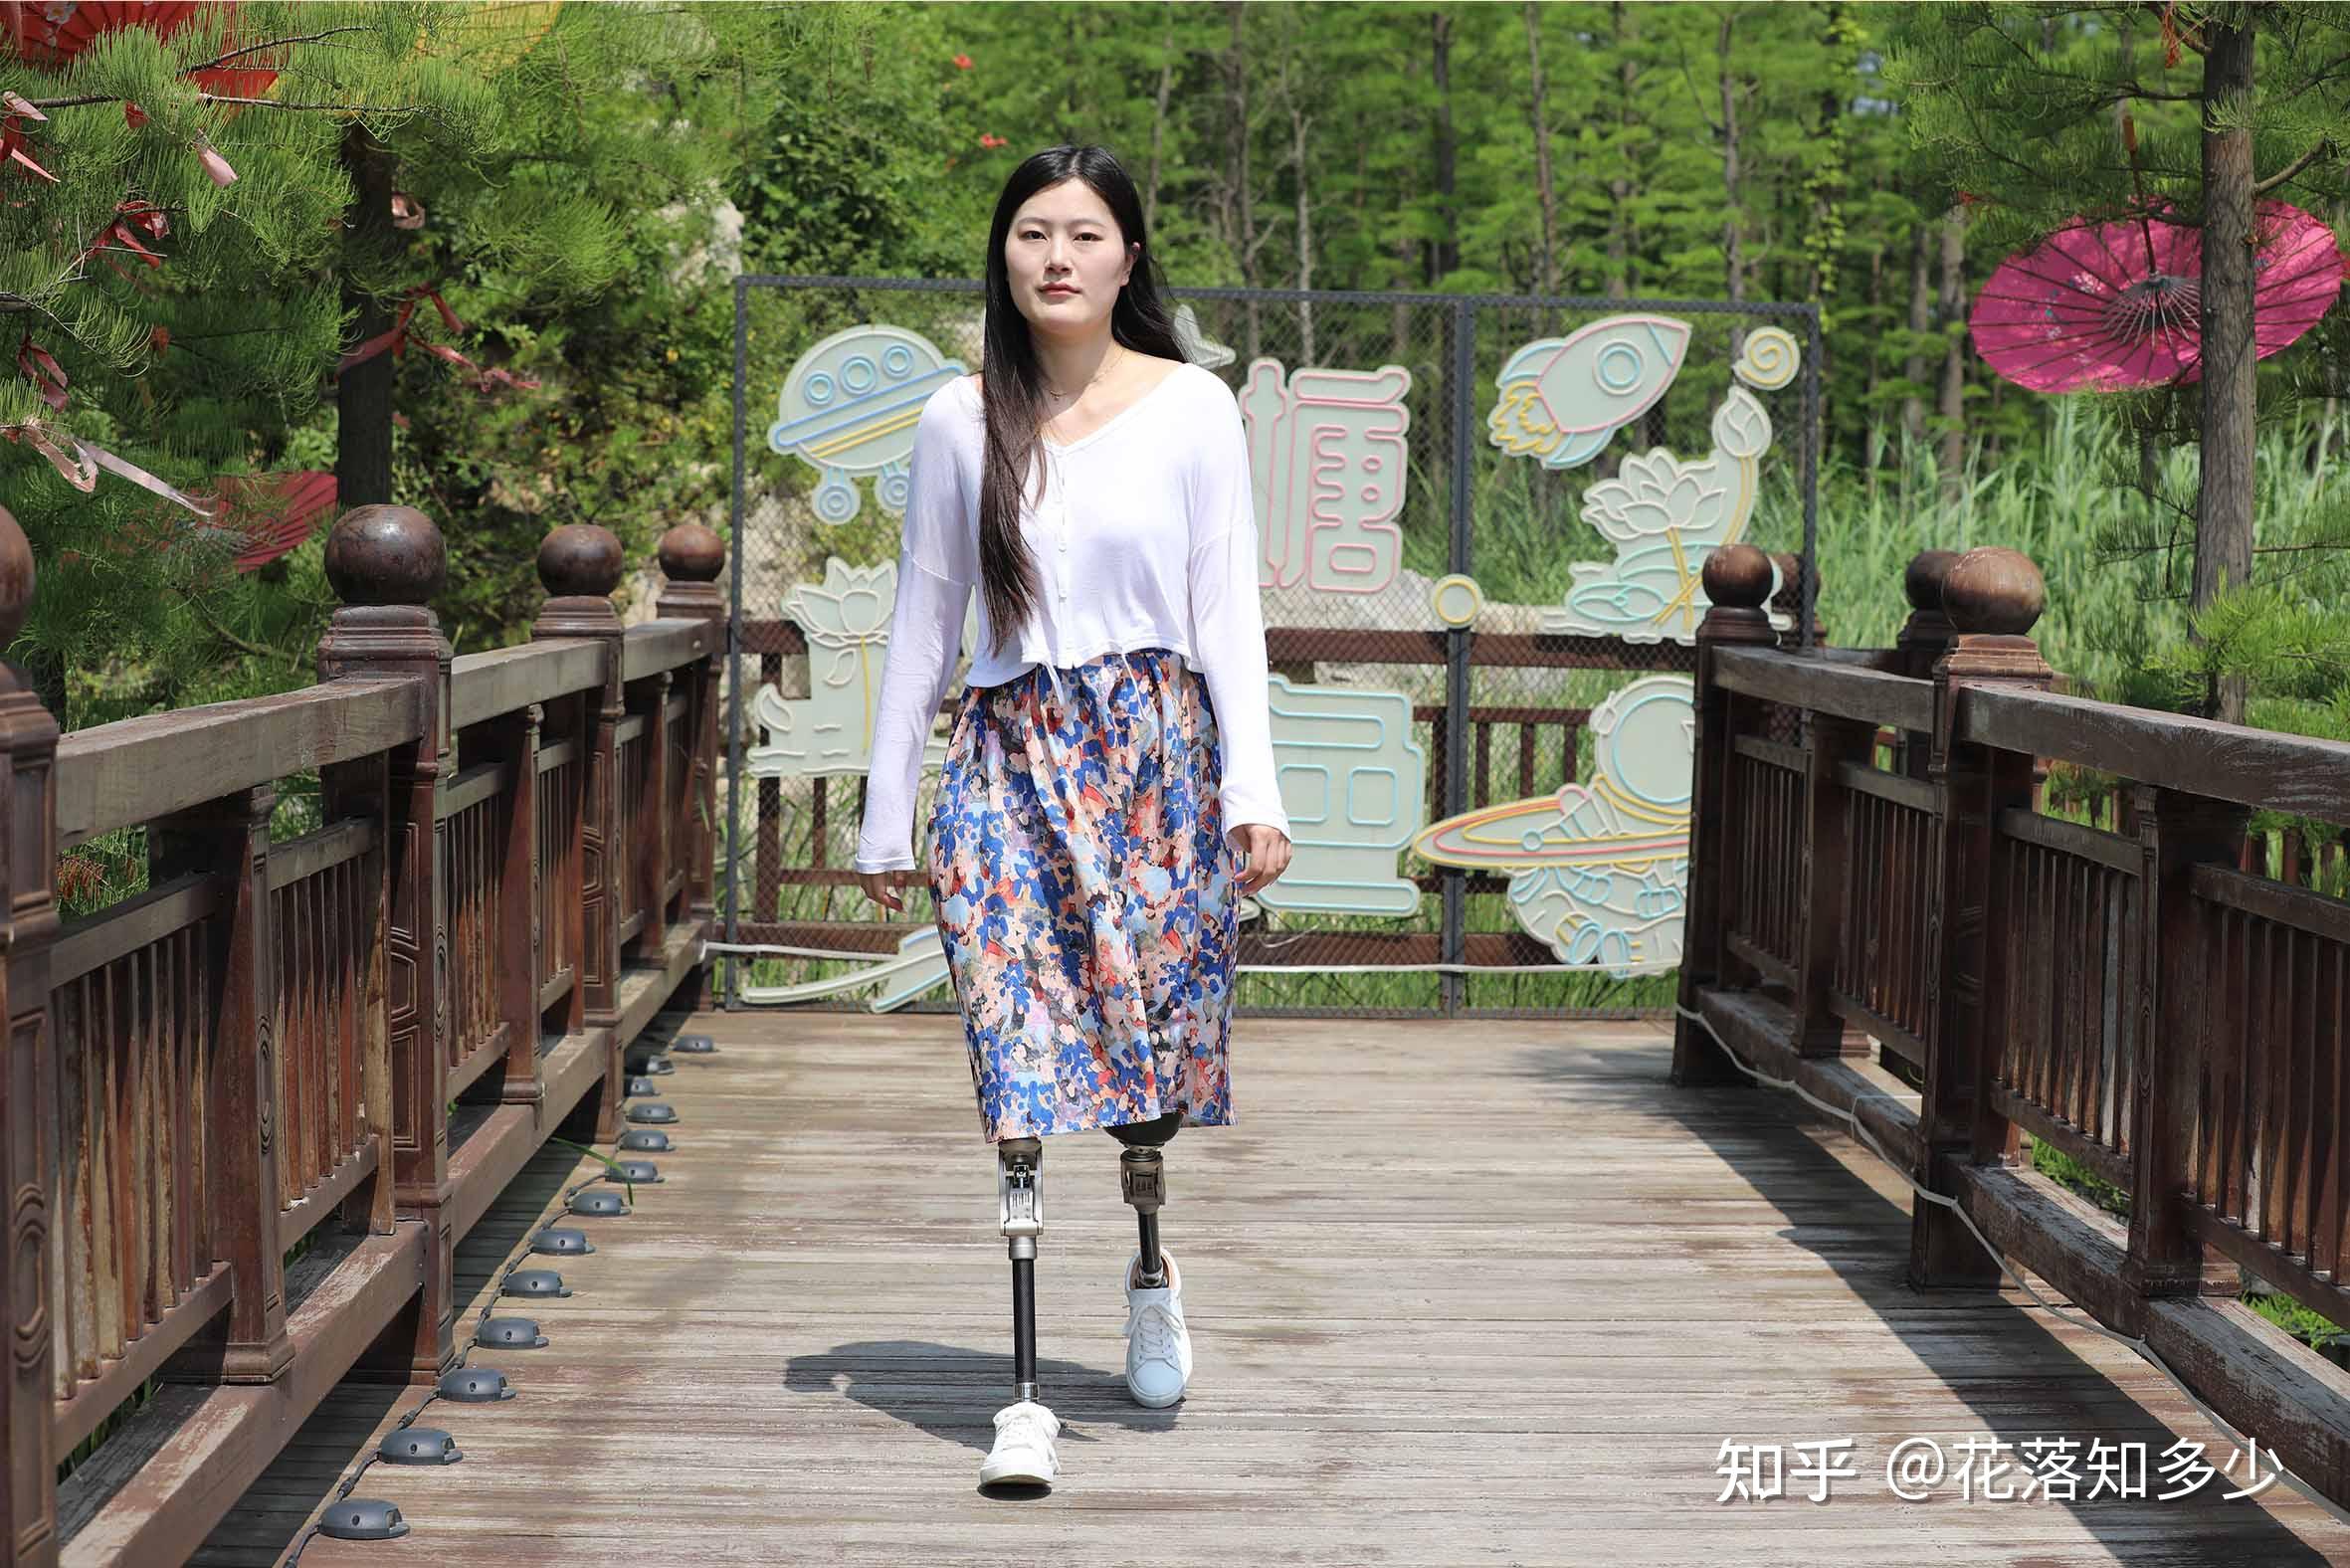 重庆康心医院康复中心 助偏瘫患者摆脱轮椅 - 重庆康心医院